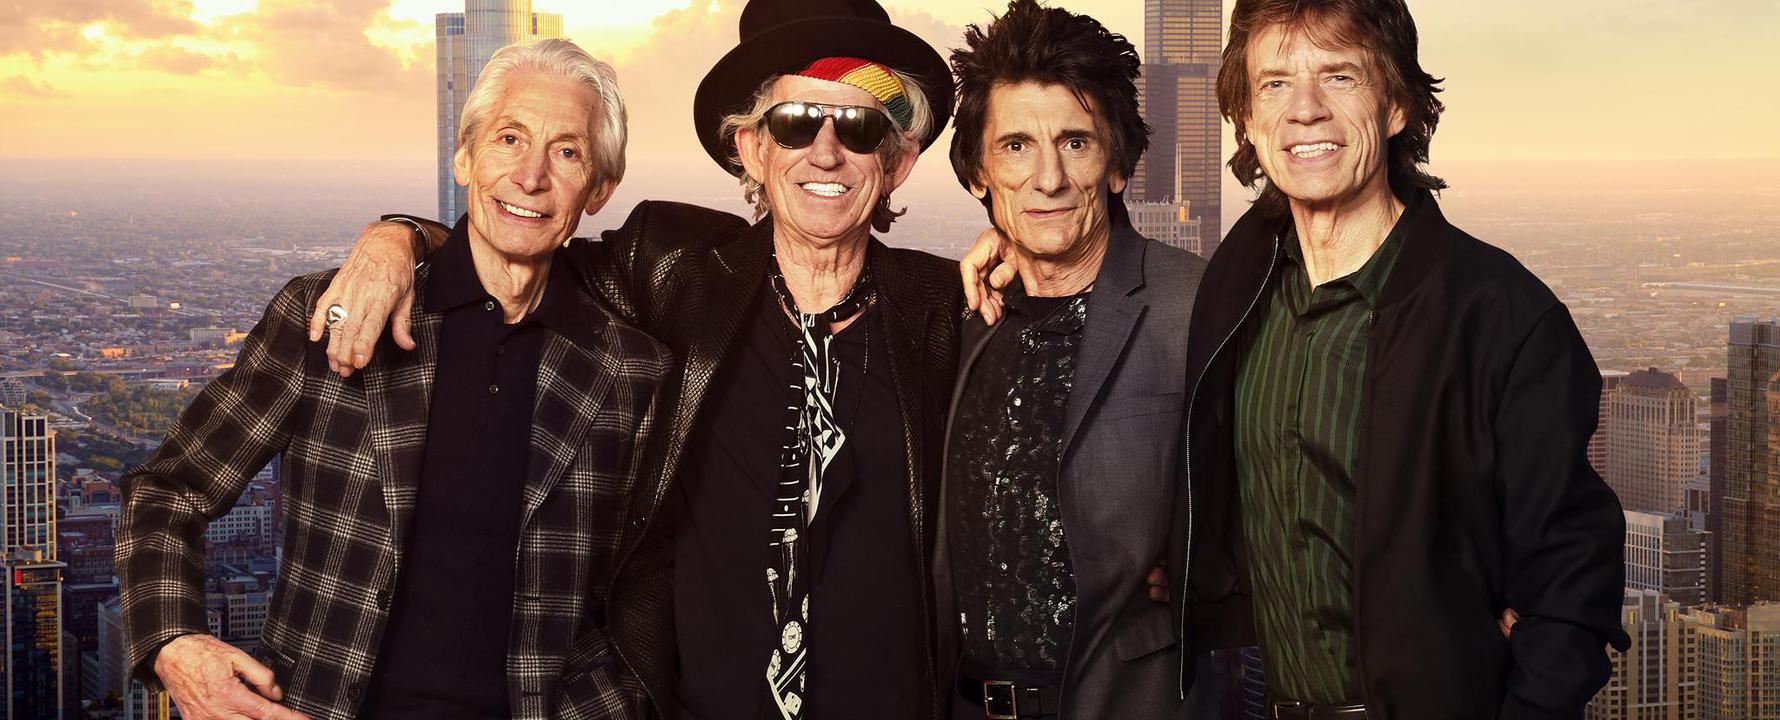 Fotografía promocional de The Rolling Stones